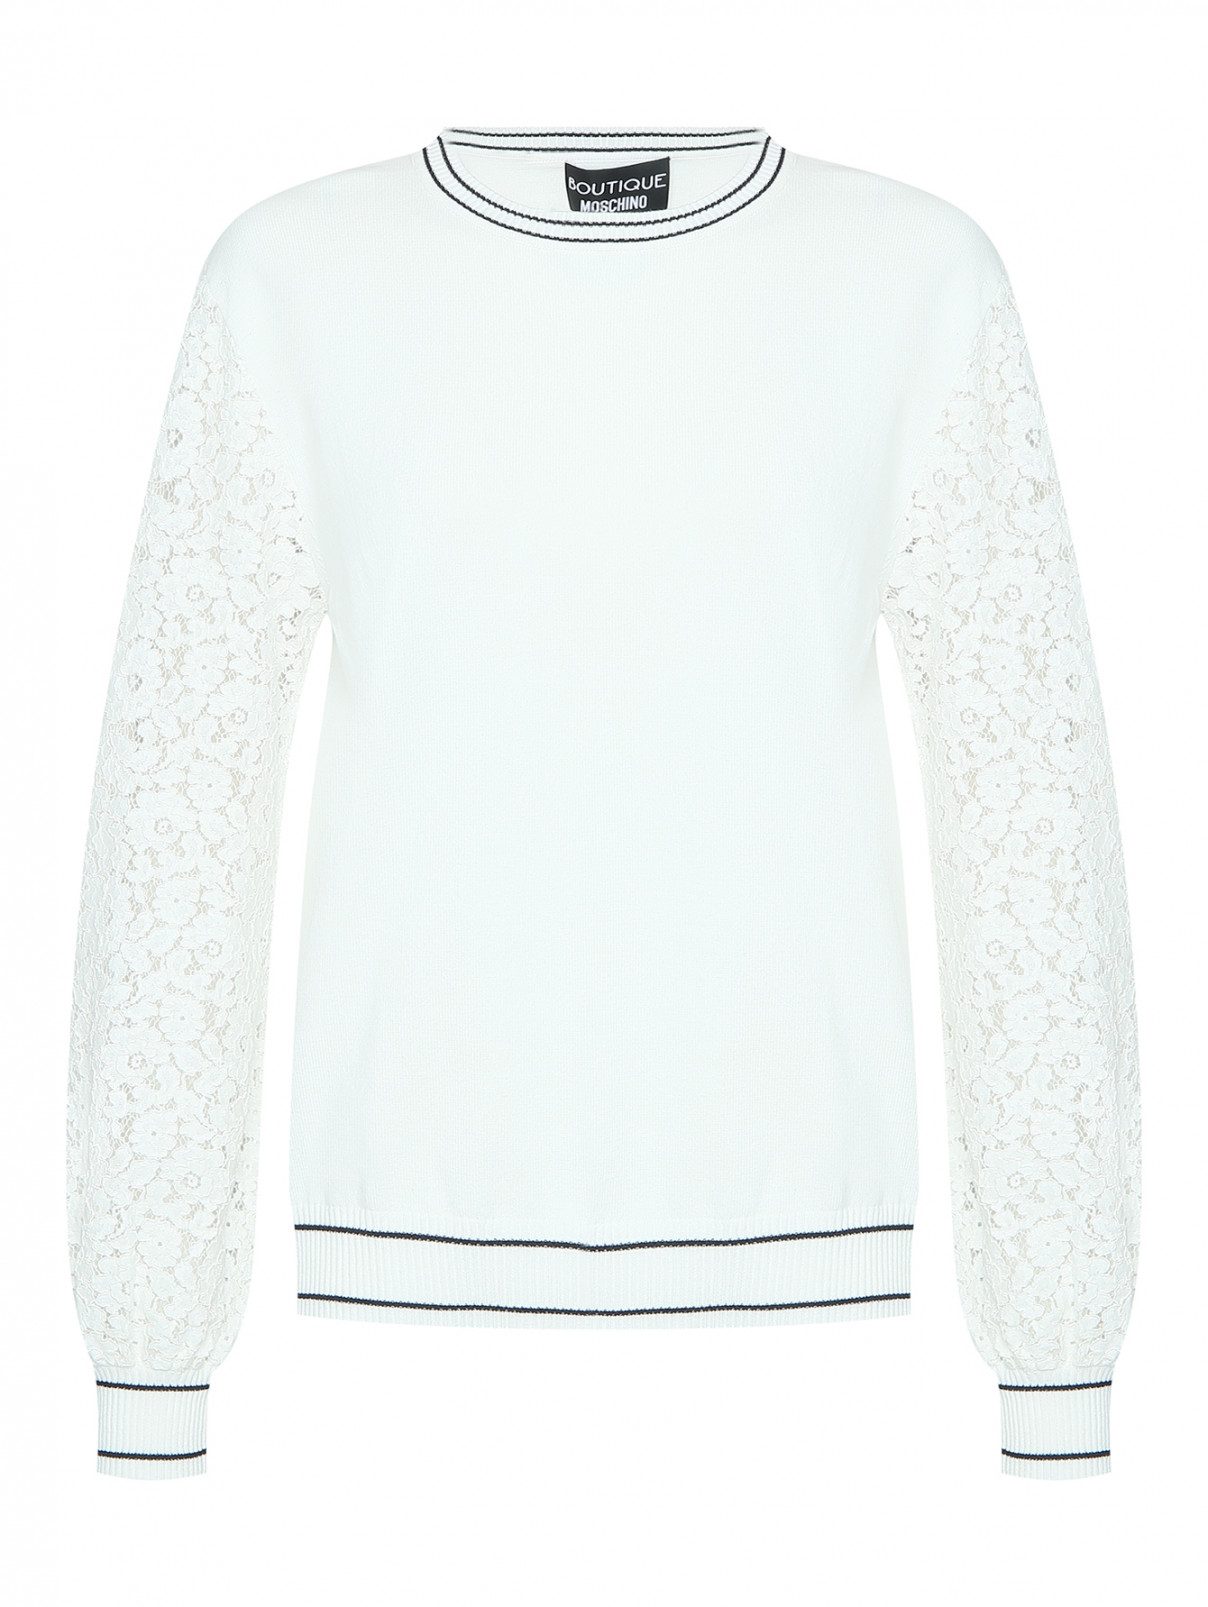 Джемпер с контрастной отделкой с круглым вырезом Moschino Boutique  –  Общий вид  – Цвет:  Белый